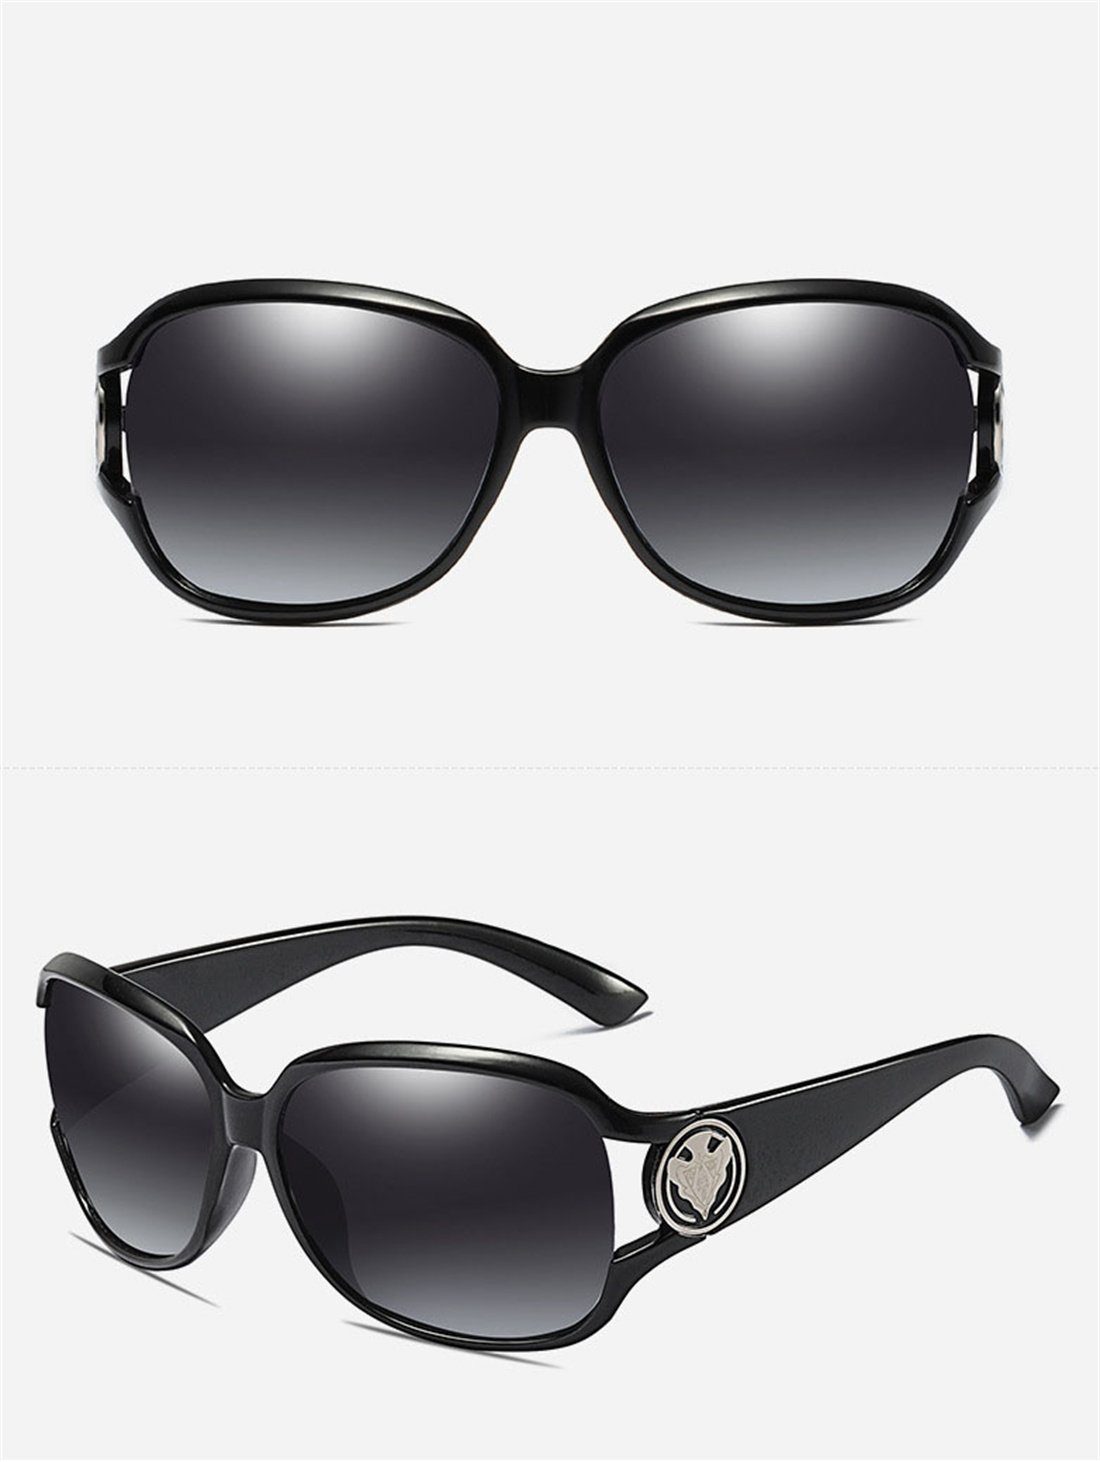 DÖRÖY Sonnenbrille für Frauen, Sonnenbrillen Polarisierende Outdoor-Sonnenbrillen